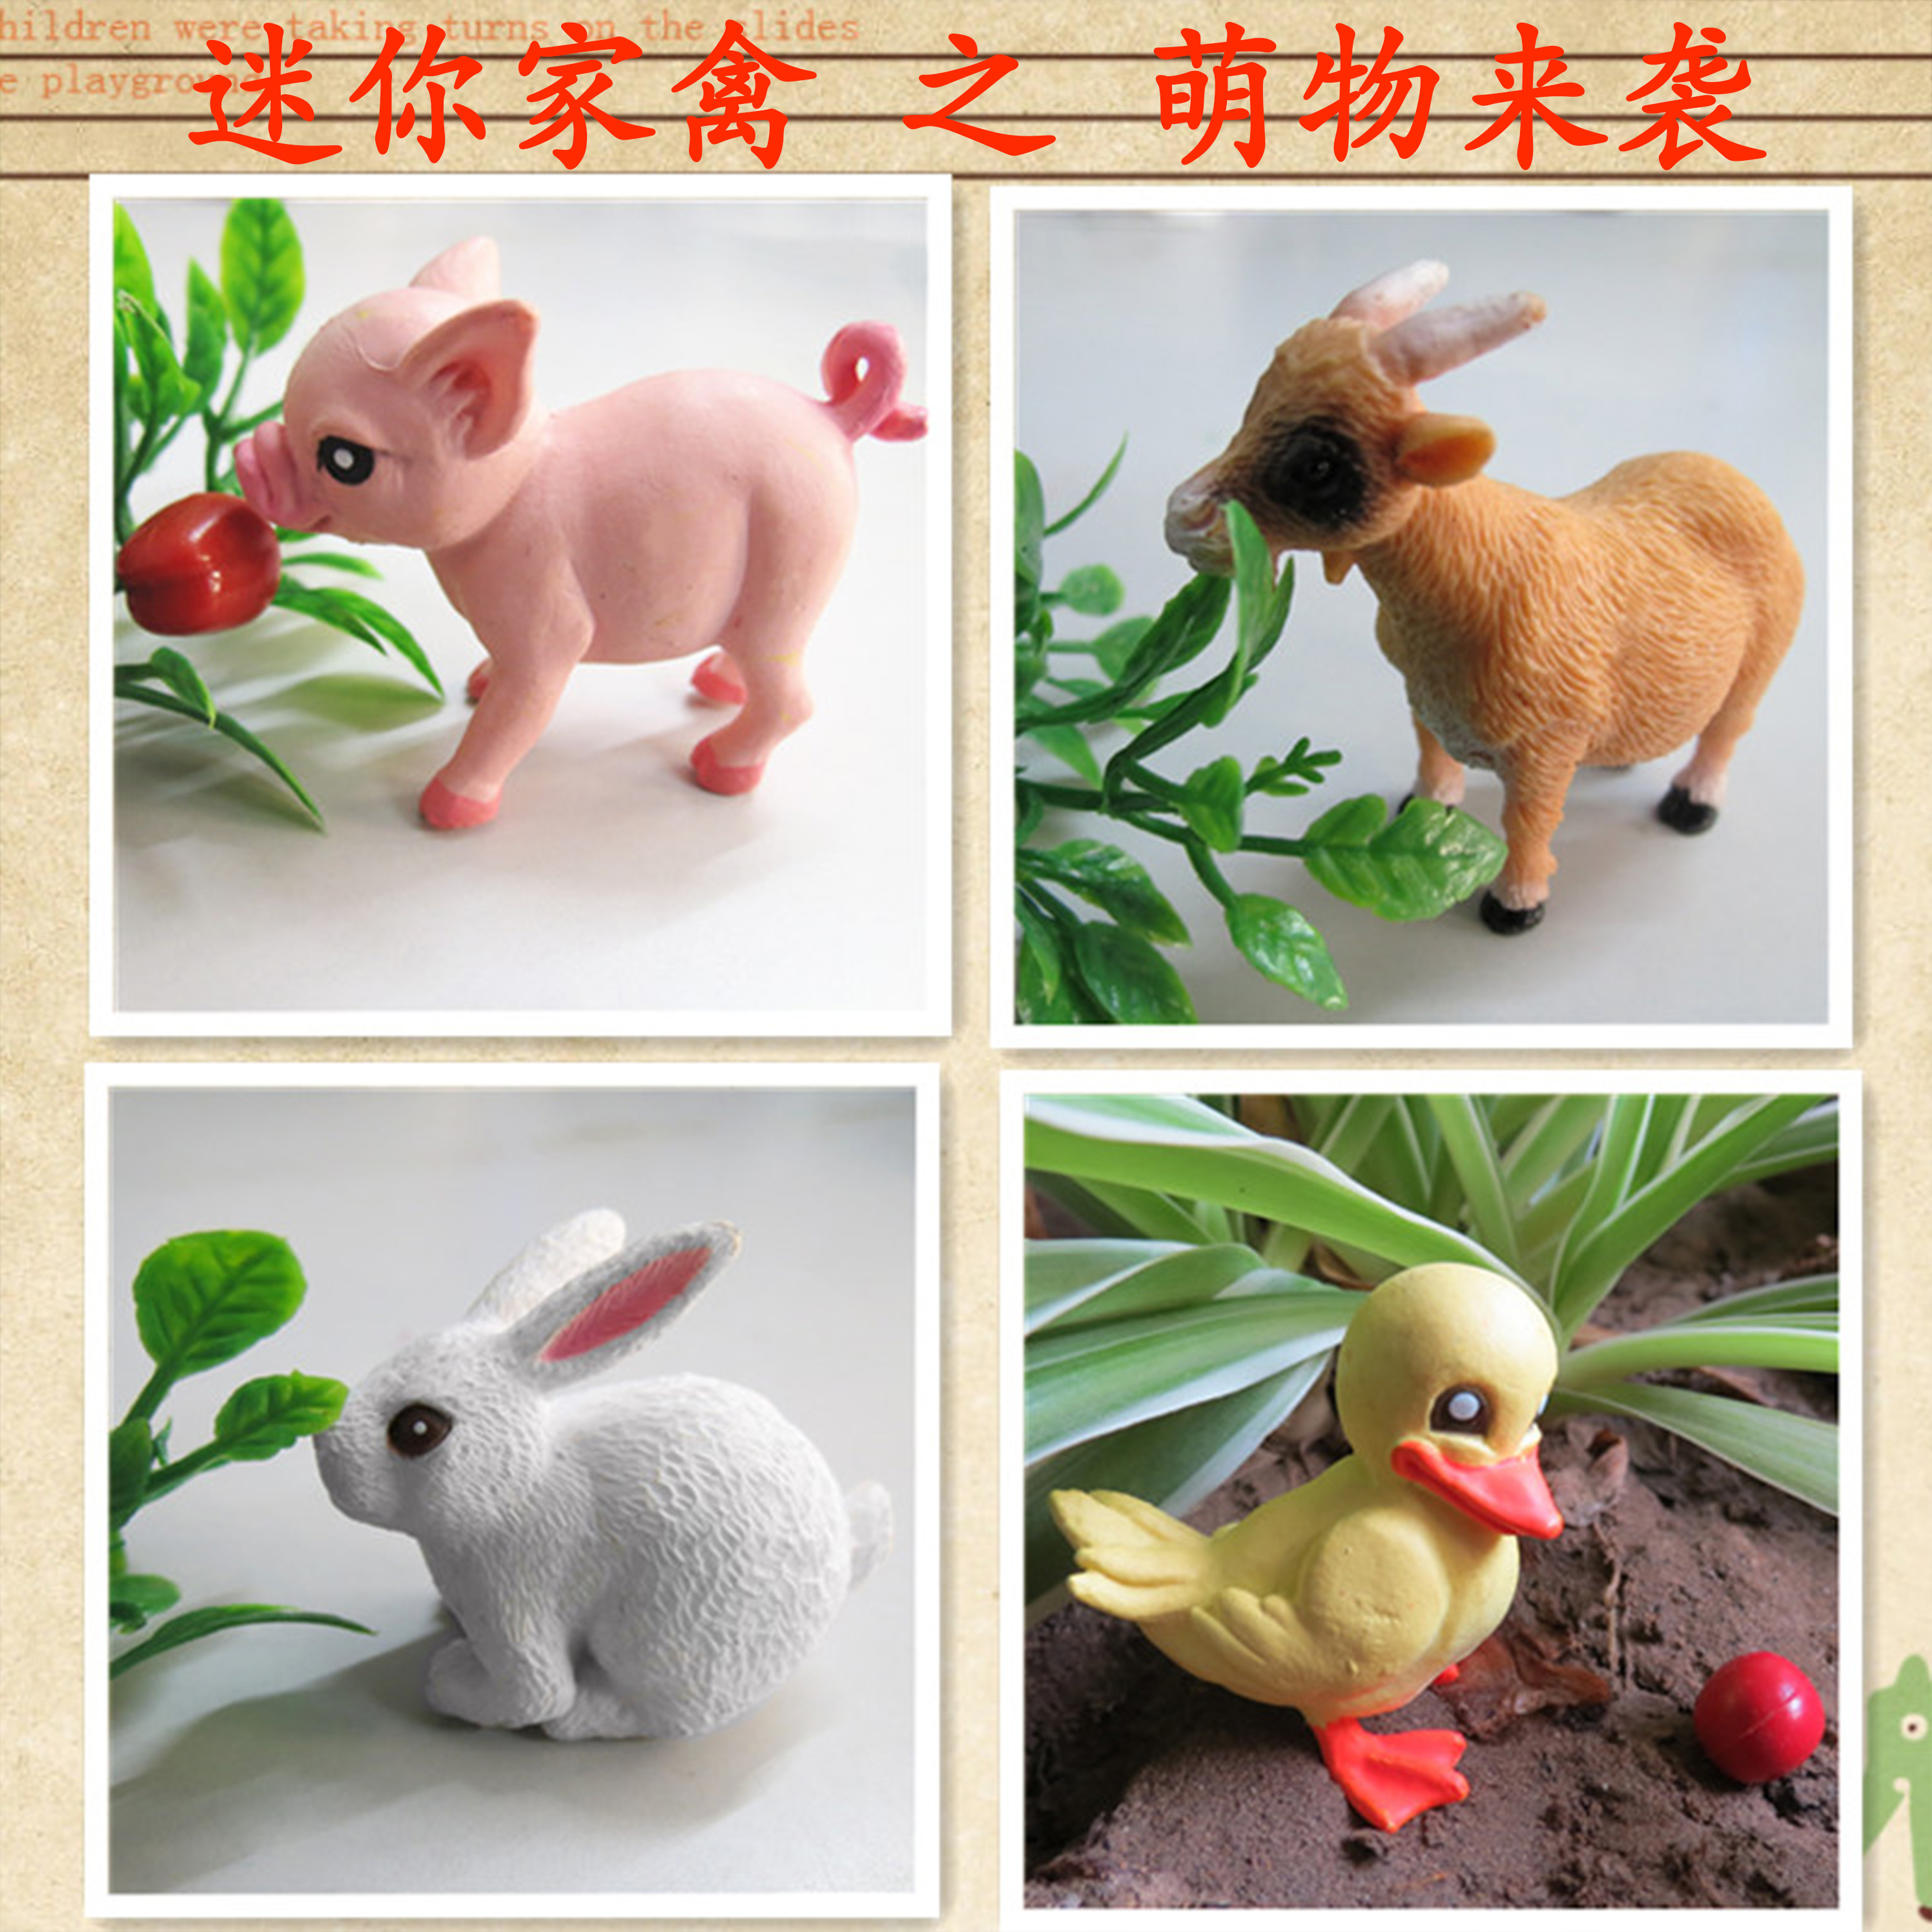 迷你仿真小动物模型儿童玩具鸡 鸭牛驴兔等家禽教学道具 宝宝玩具 - 图2